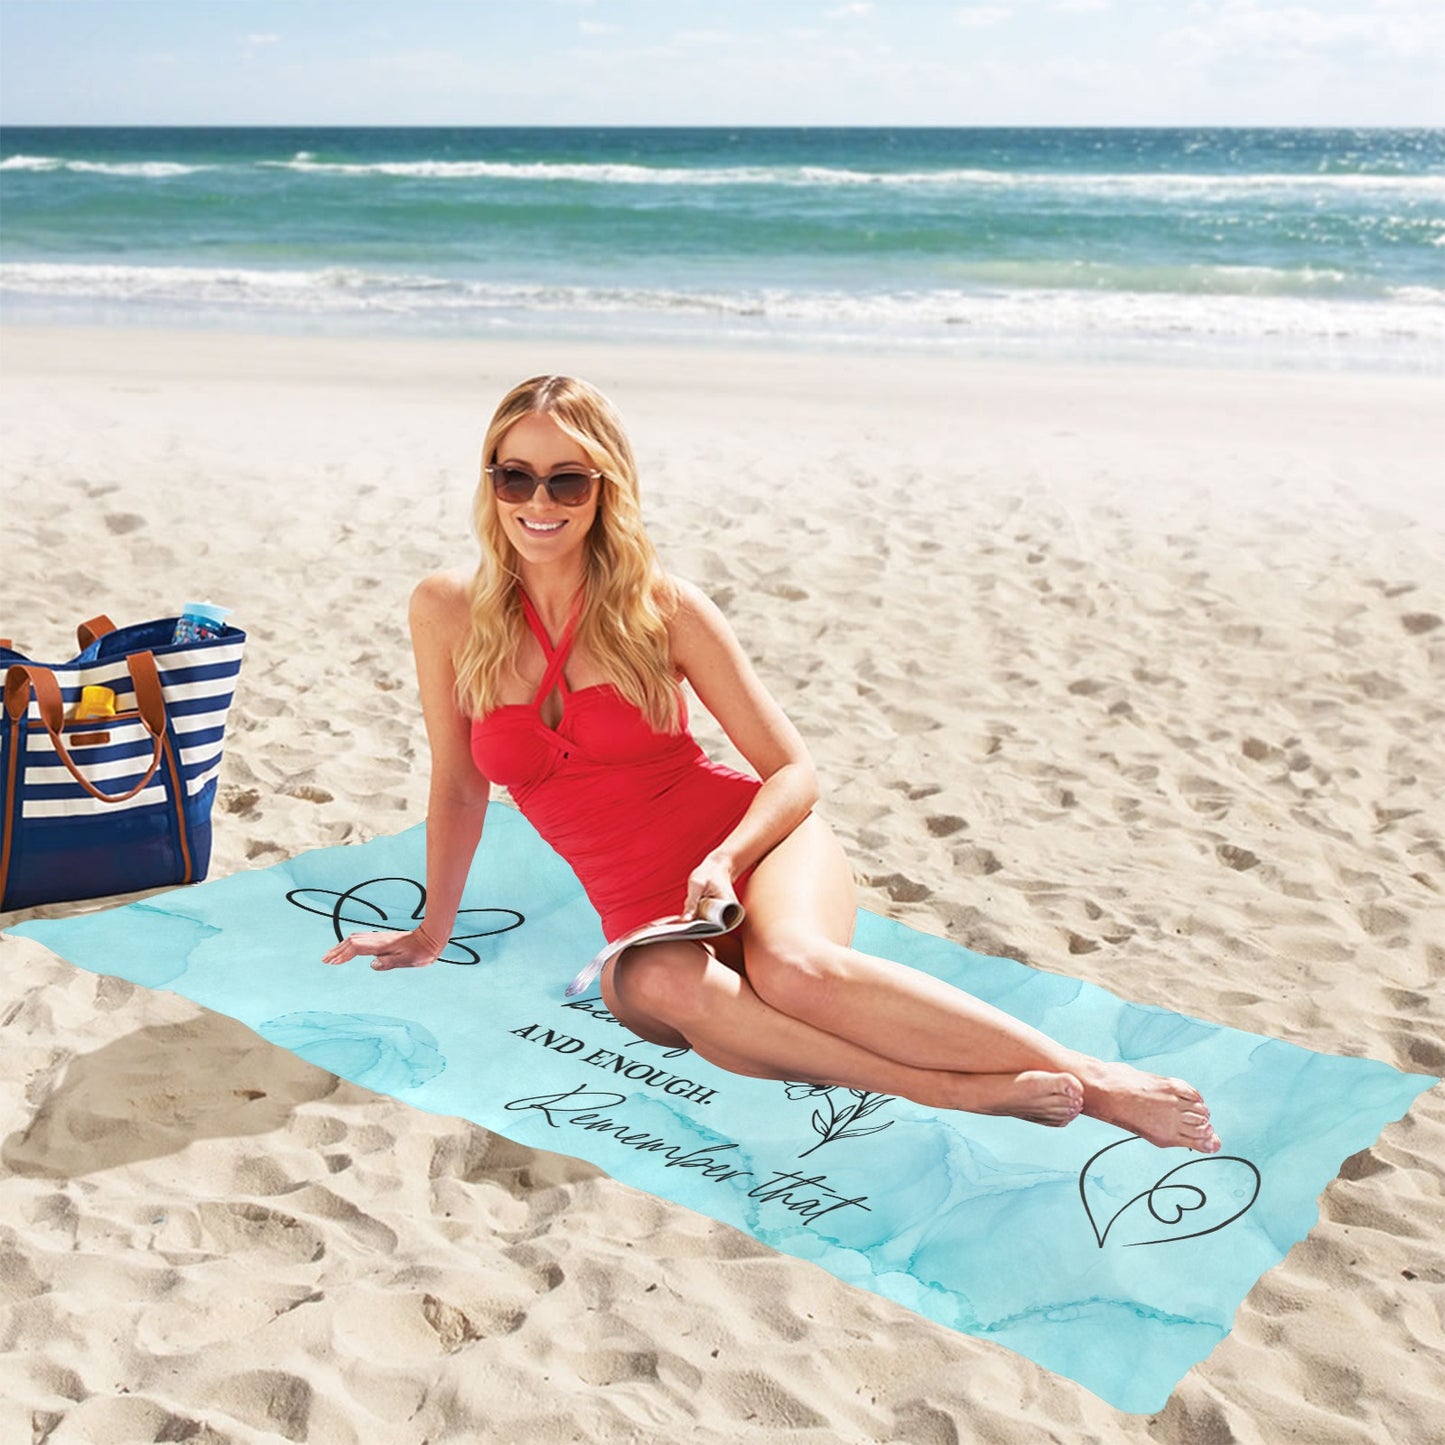 Sun-Kissed Sands Beach Towel